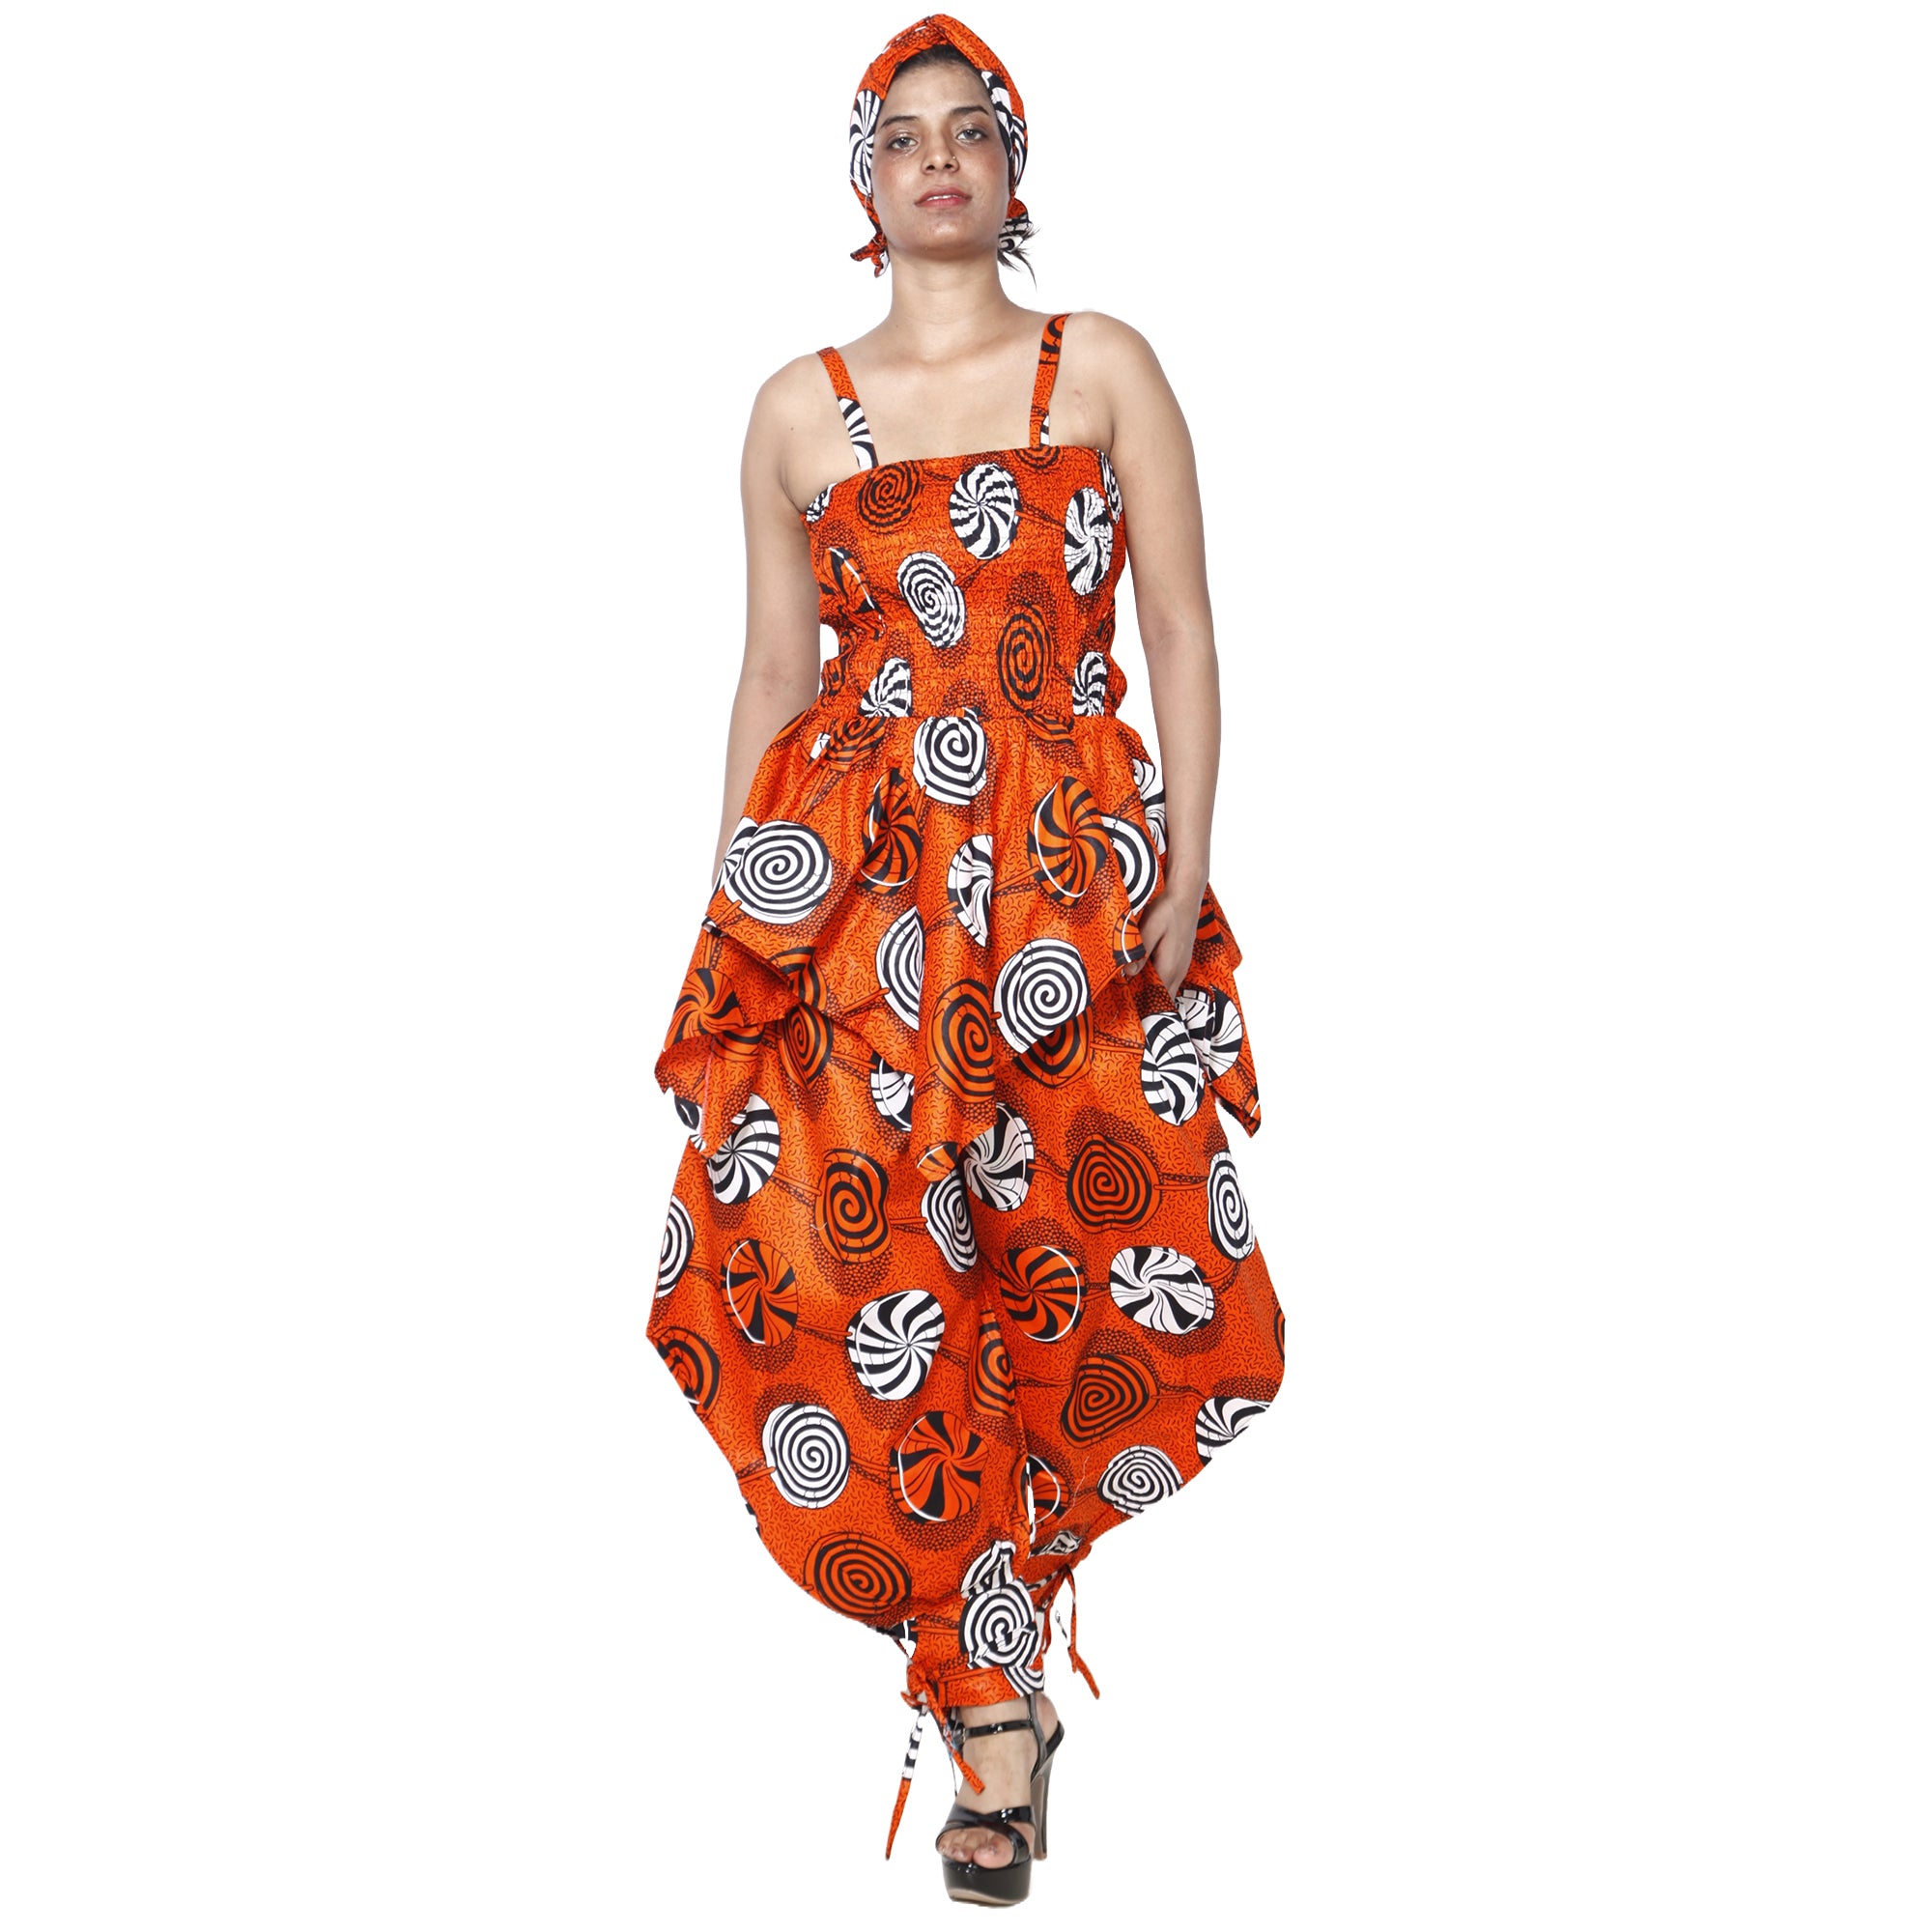 Women's African Print Sleeveless Peplum Top & Jogger Pants